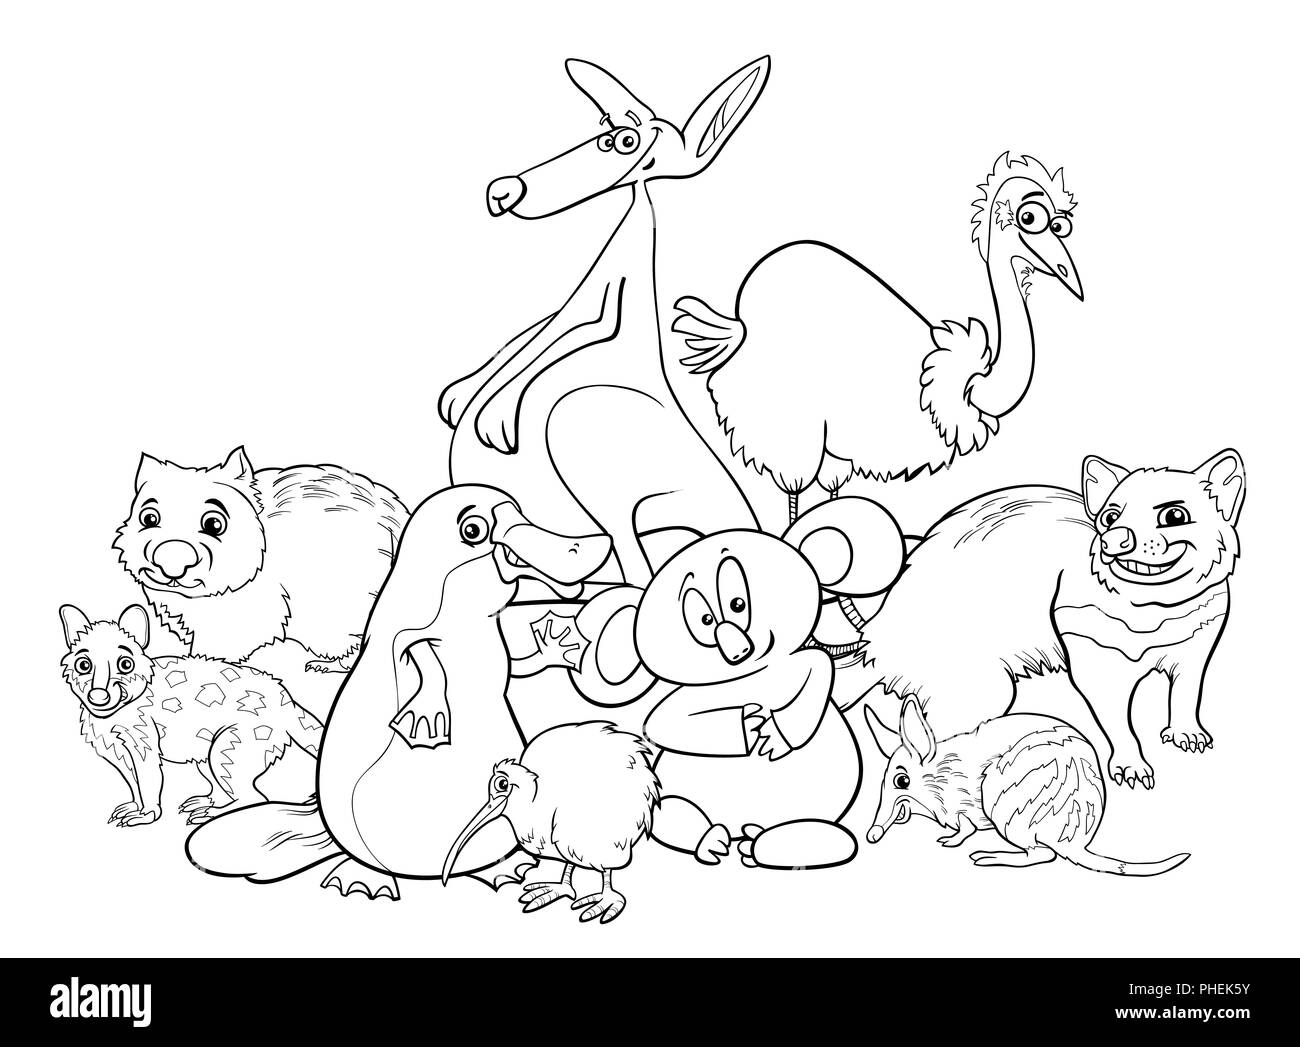 Livre de coloriage dessin animé des animaux australiens Banque D'Images